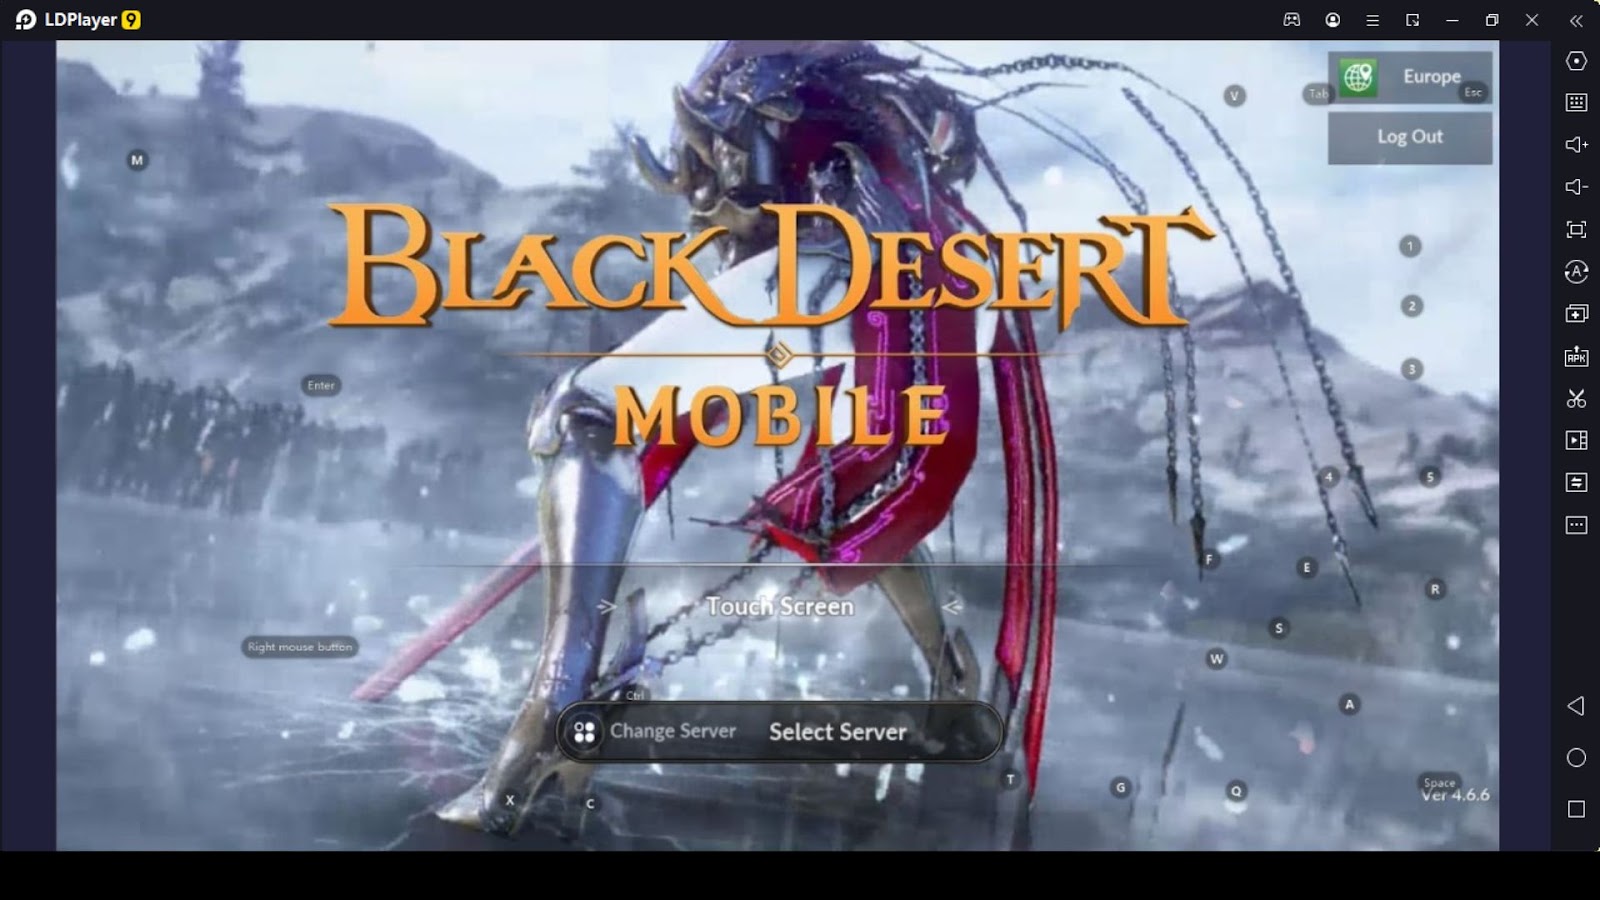 Black Desert Mobile codes